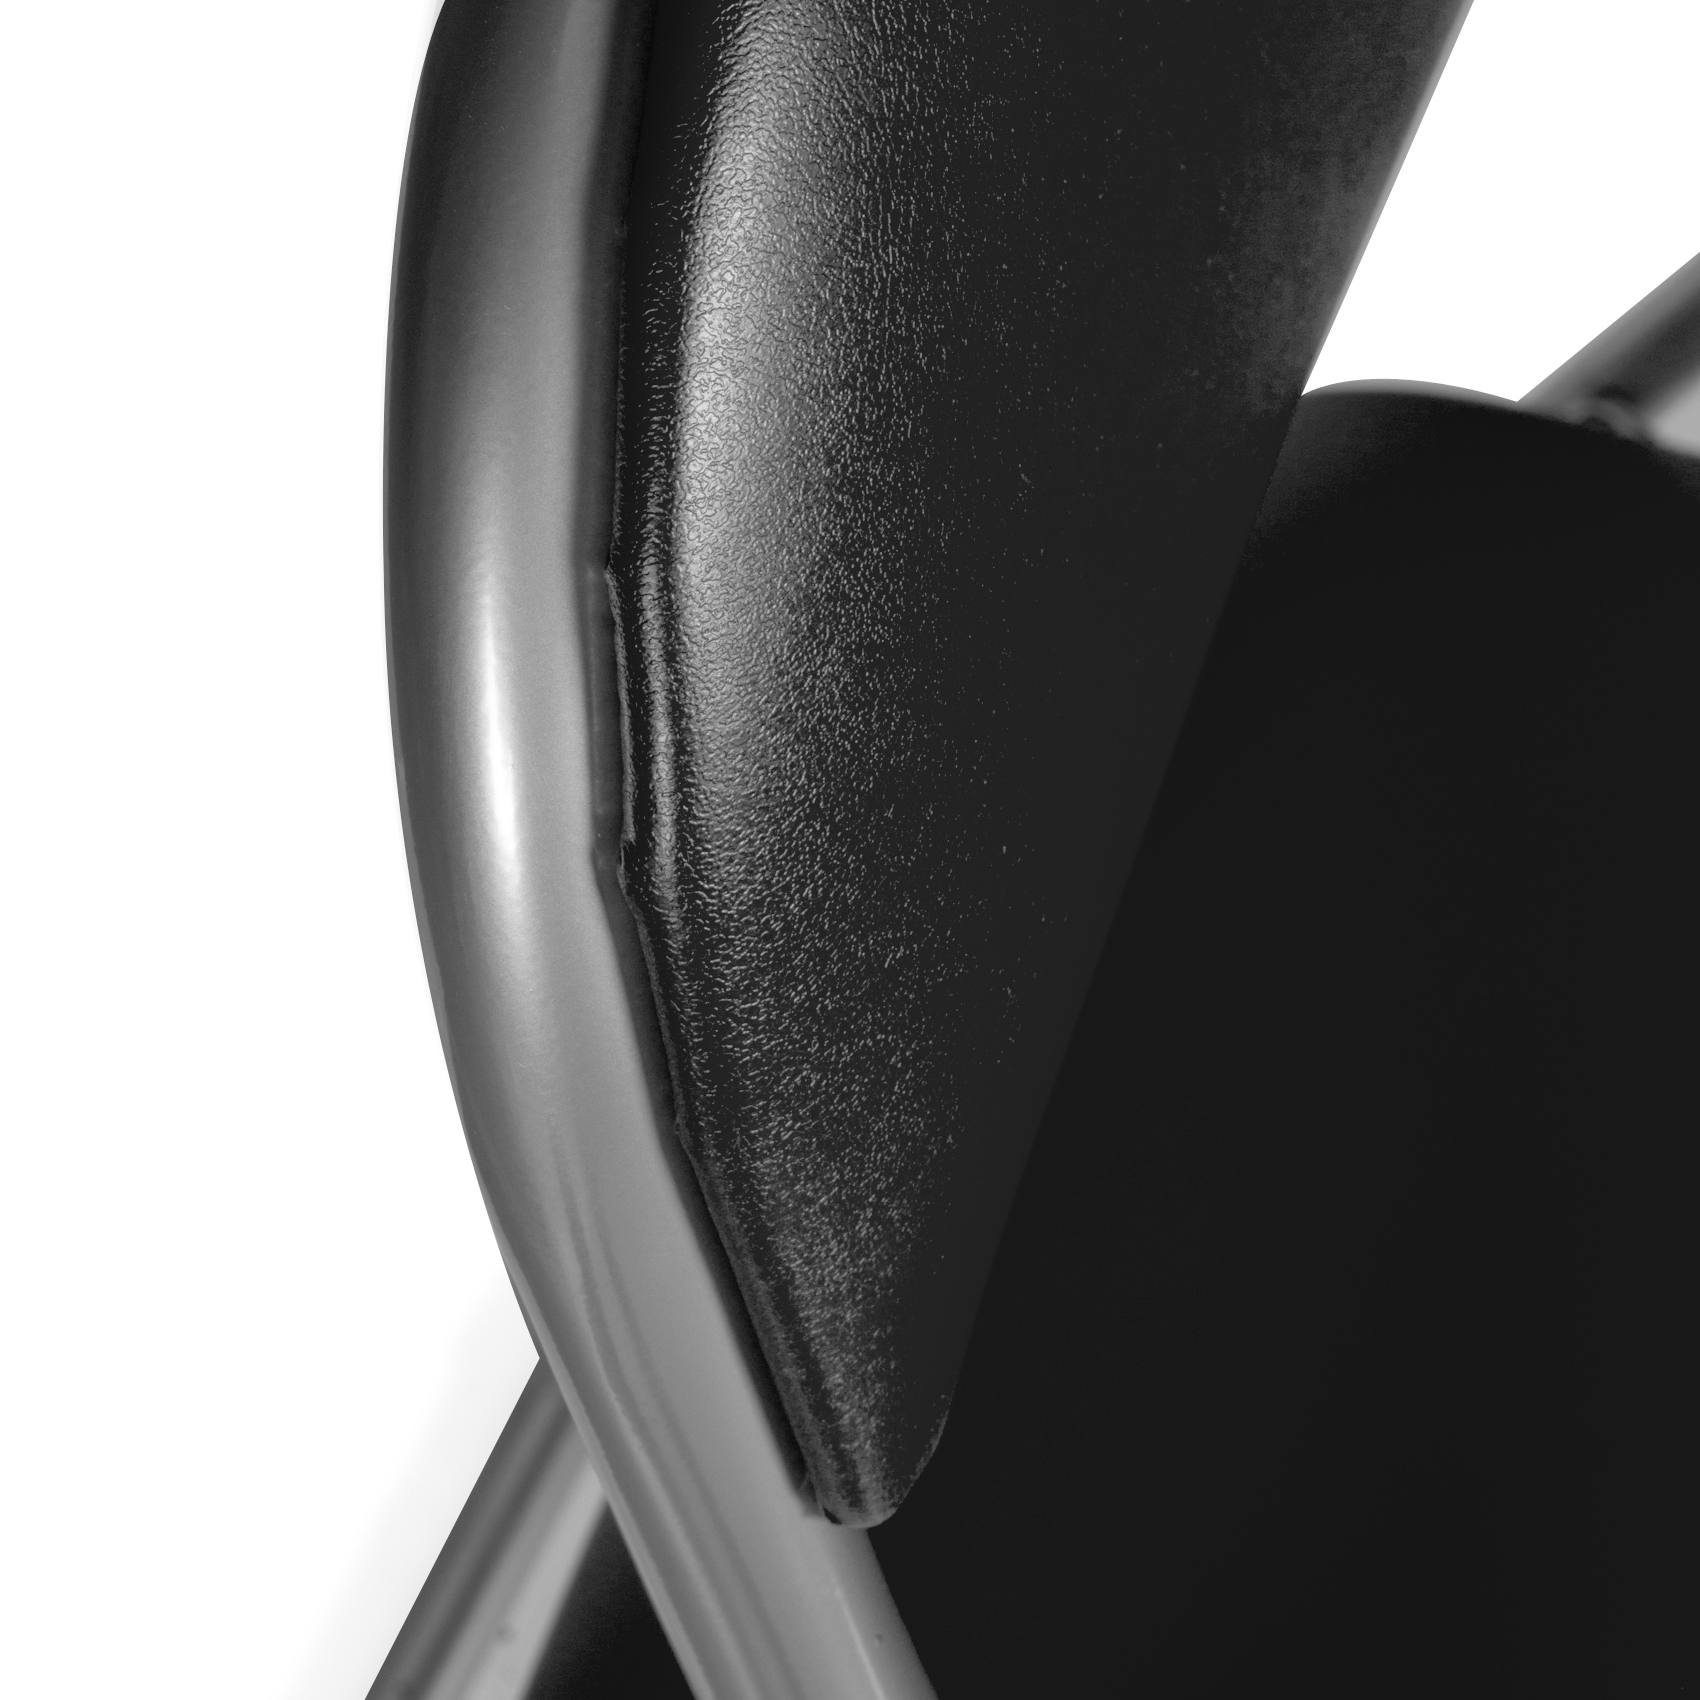 Set di due sedie pieghevoli, colore nero, Misure 43 x 47 x 78 cm